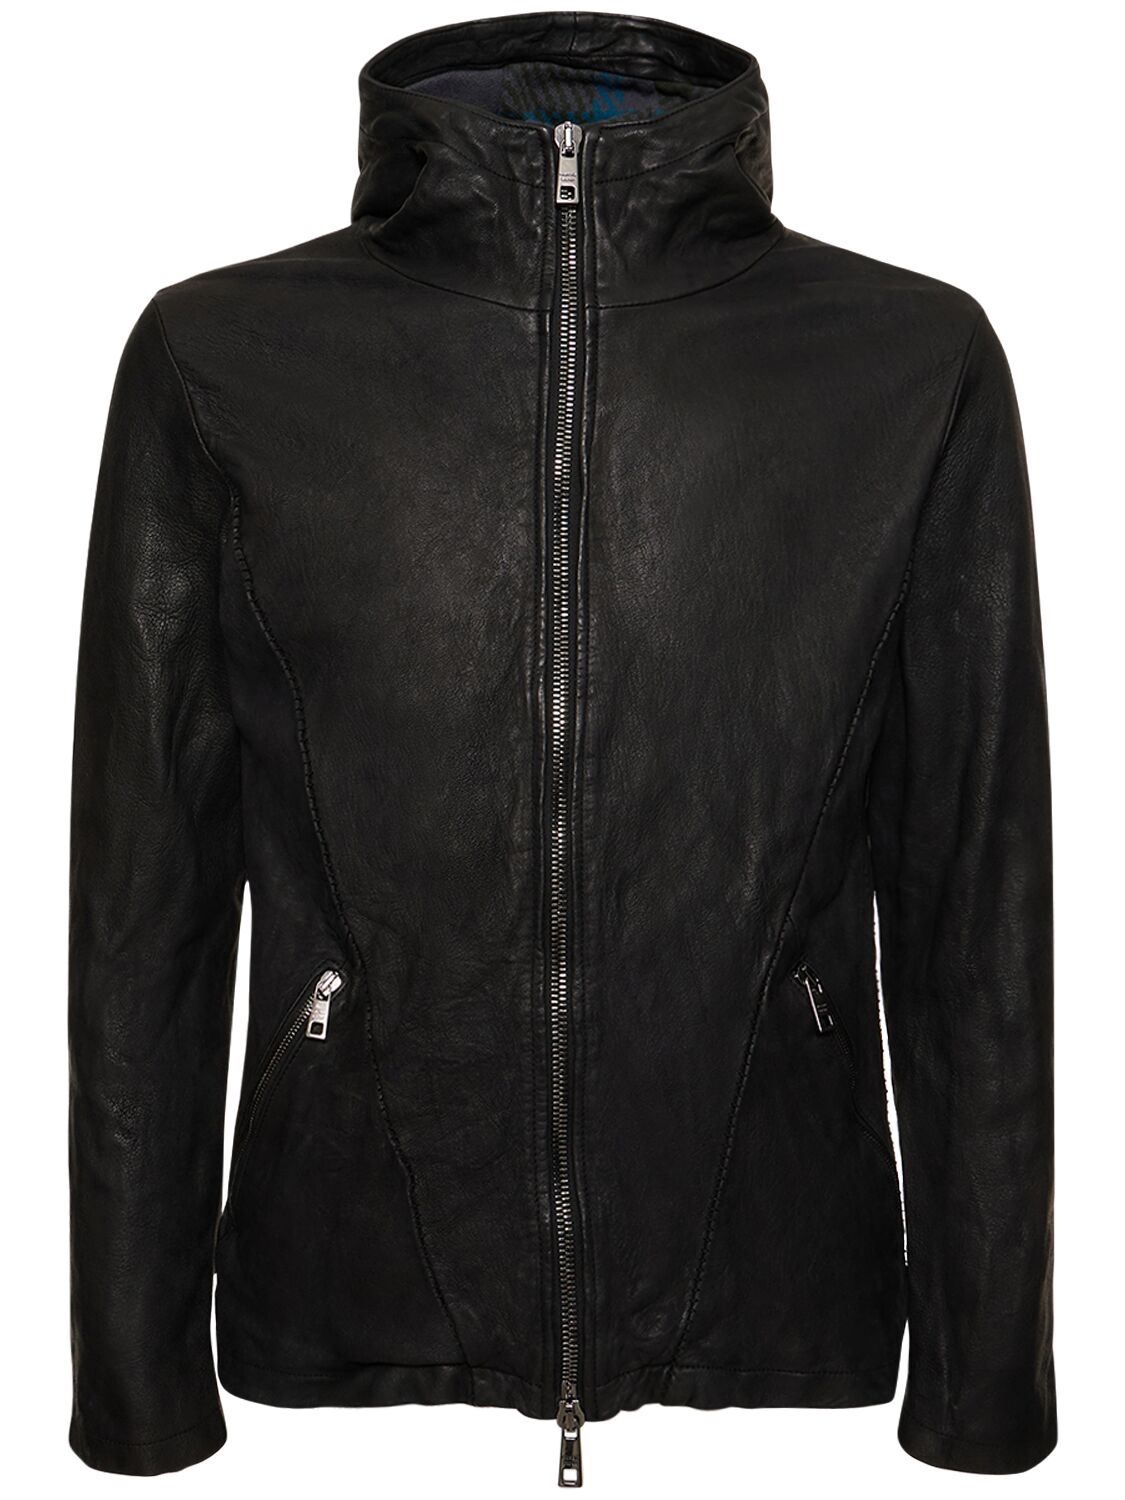 Image of Brushed Leather Hooded Jacket